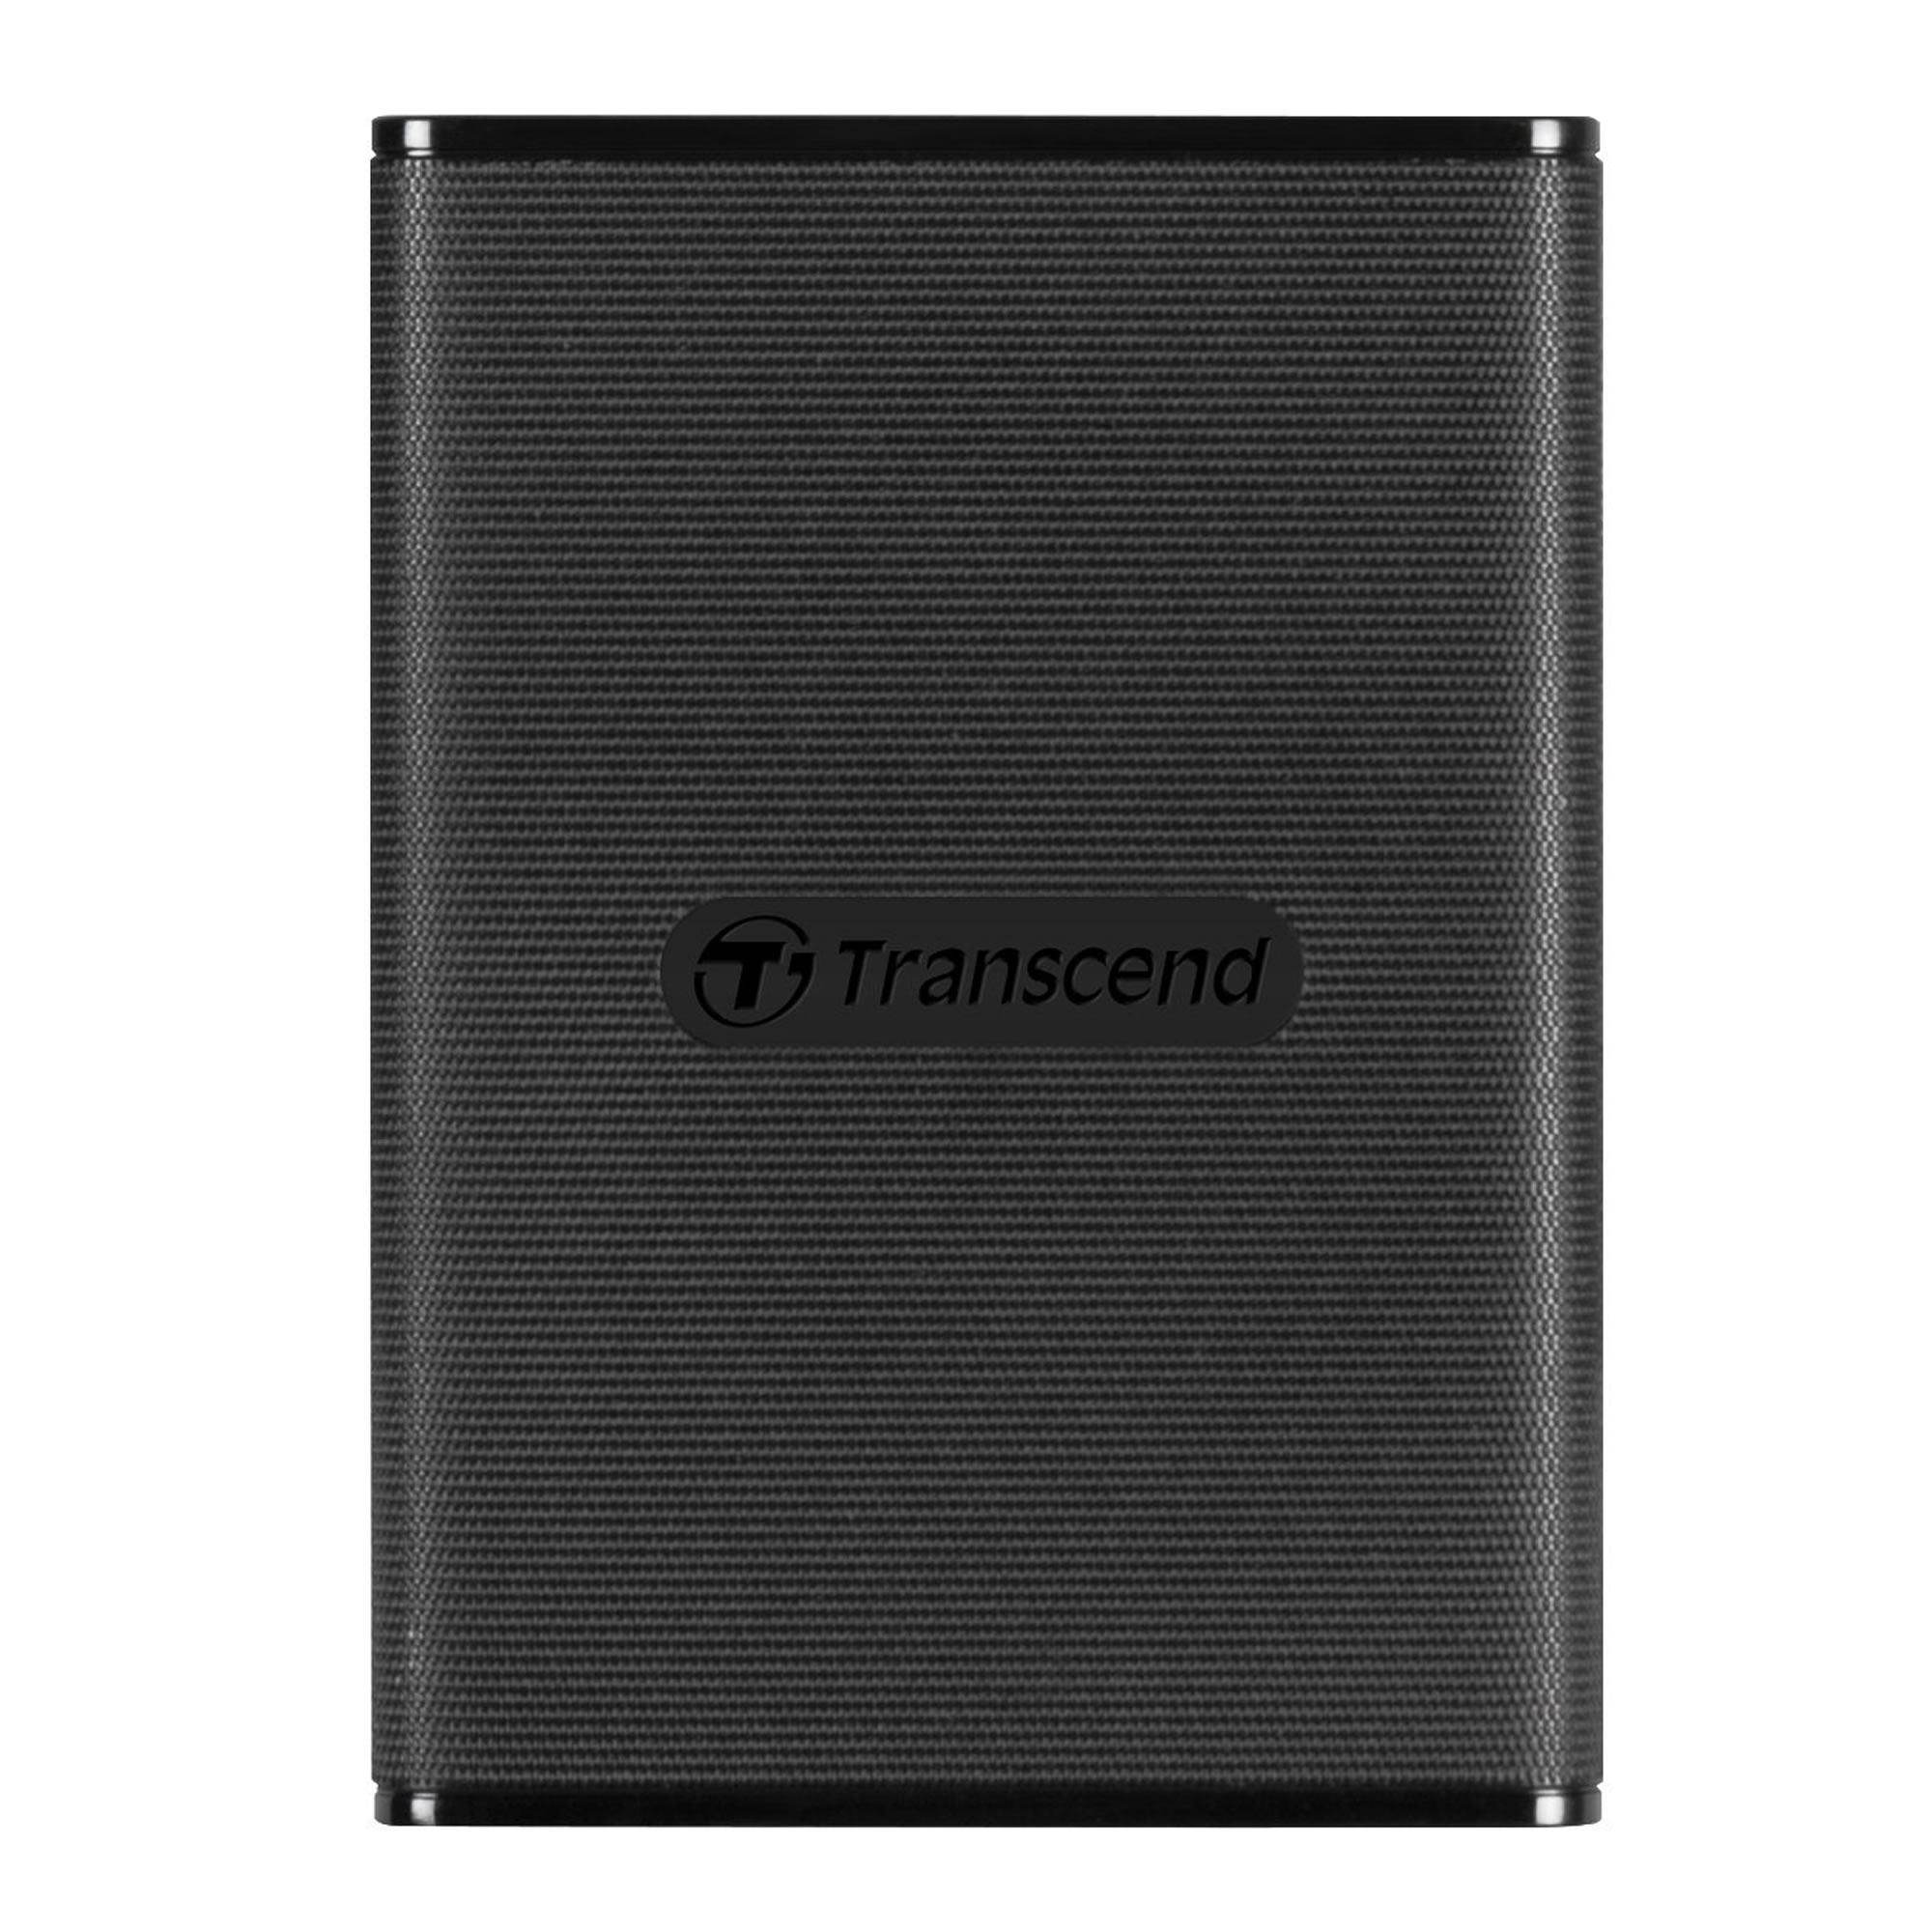 Externi SSD Transcend 500GB 270C